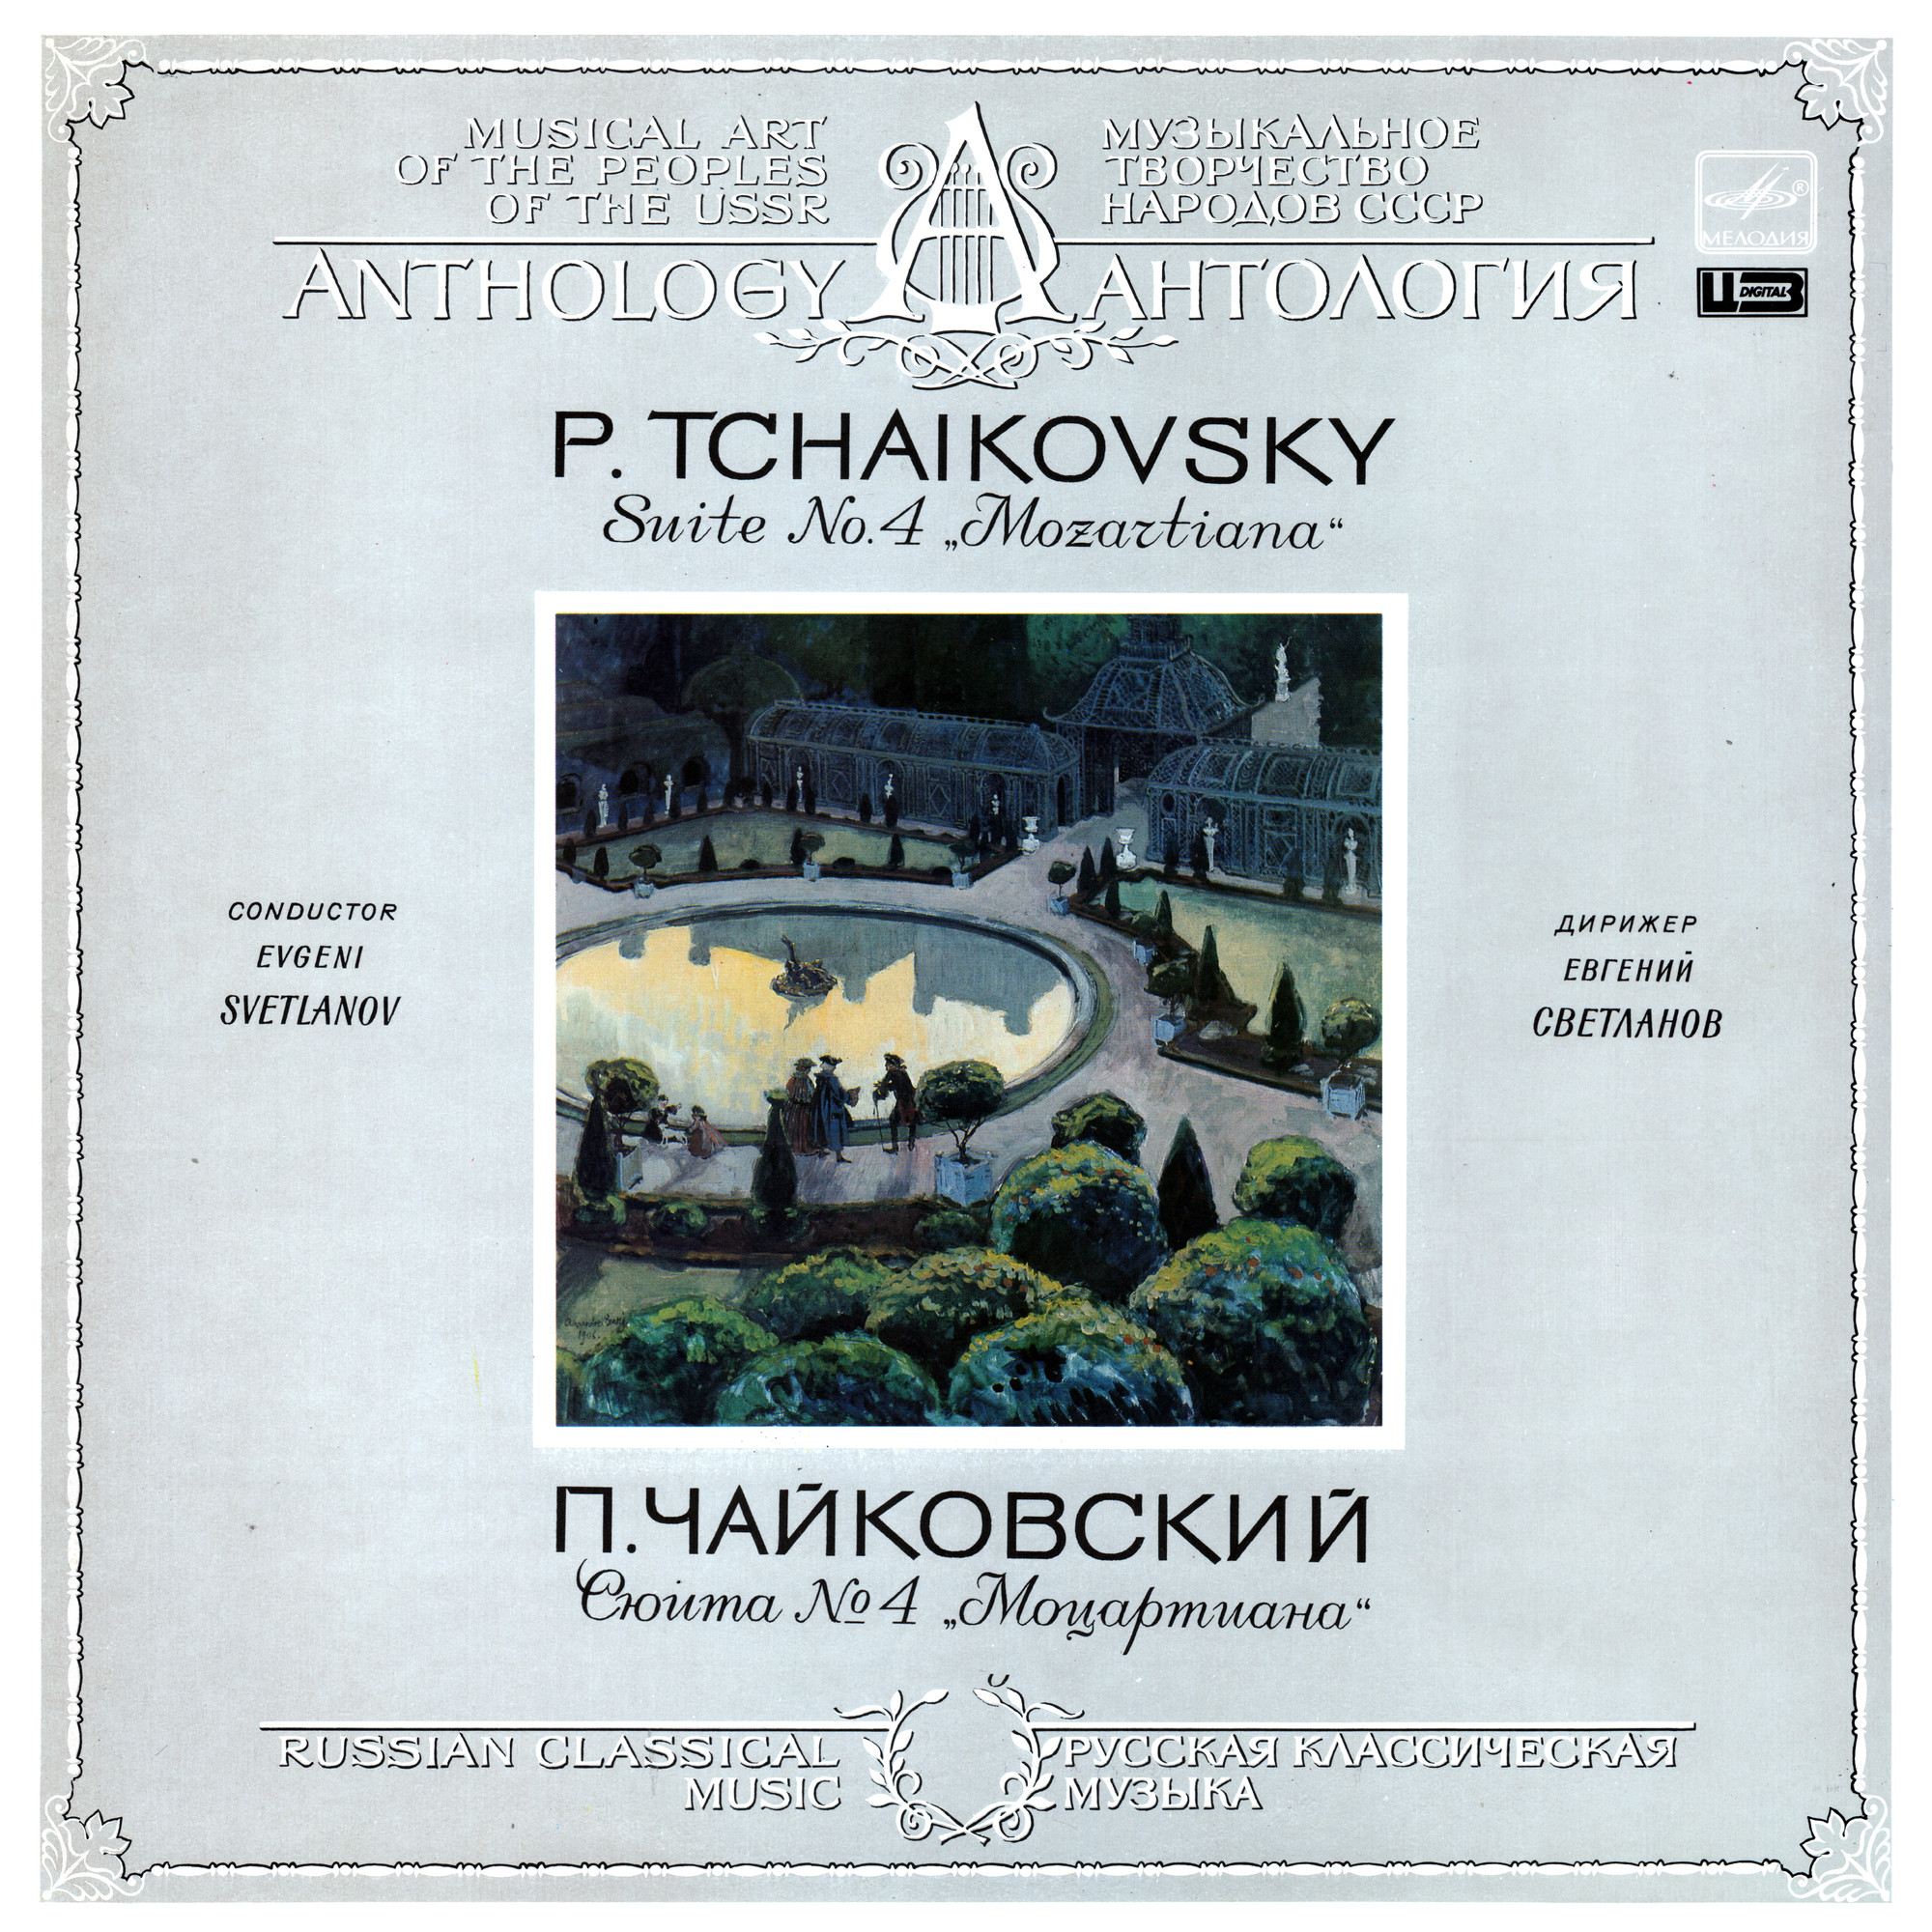 П. ЧАЙКОВСКИЙ (1840-1893): Сюита № 4 соль мажор, соч. 61 «Моцартиана».